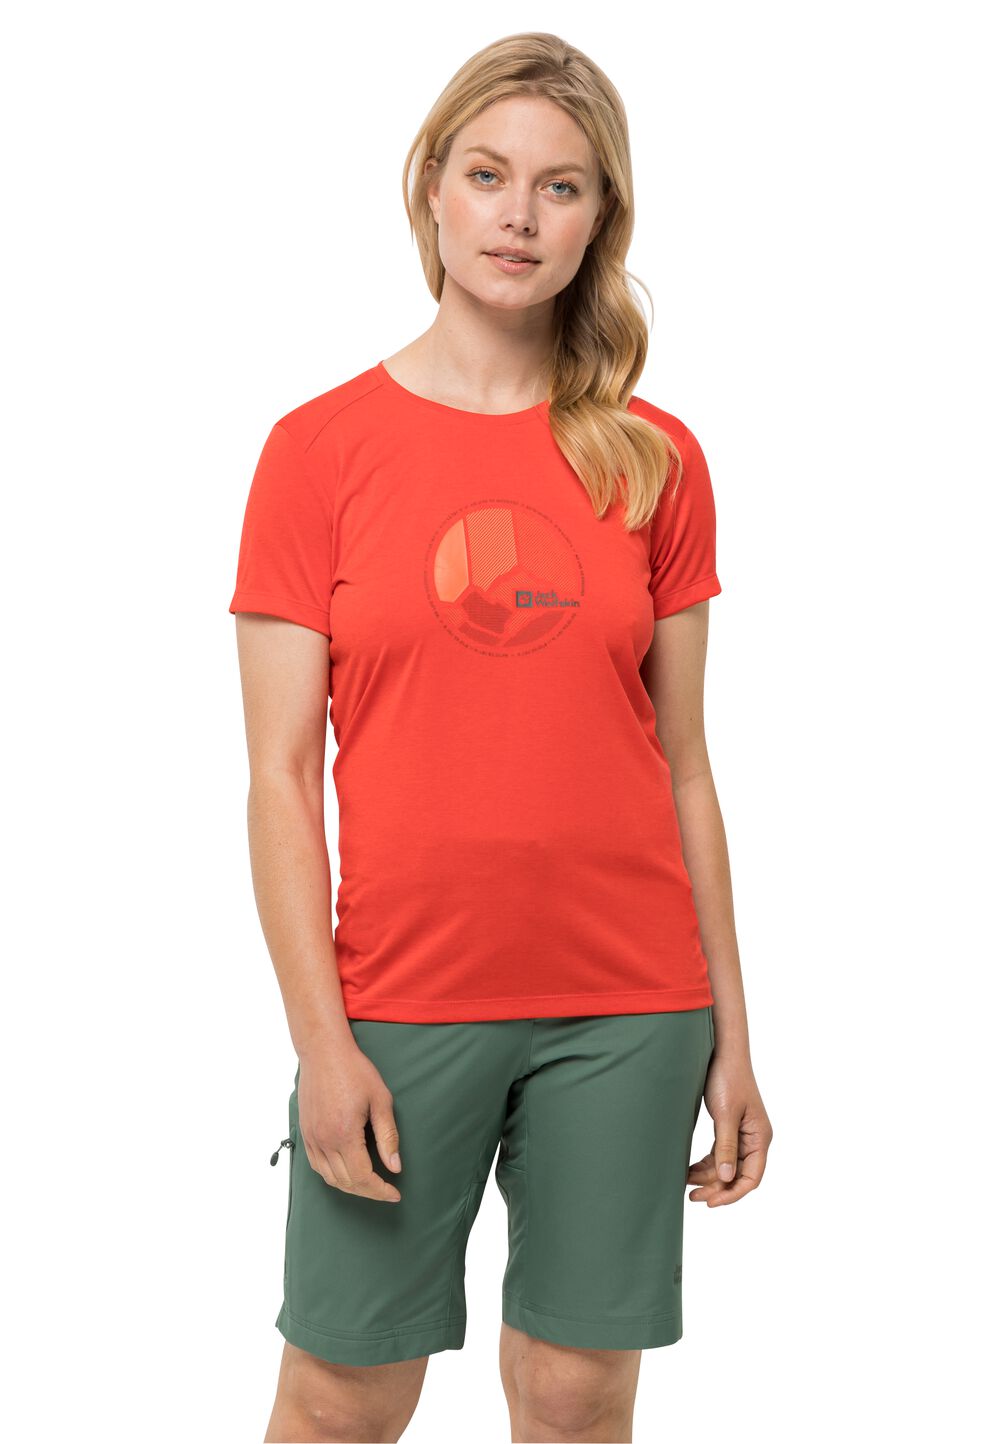 Jack Wolfskin Funktionsshirt Damen Crosstrail Graphic T-Shirt Women L tango orange tango orange von Jack Wolfskin